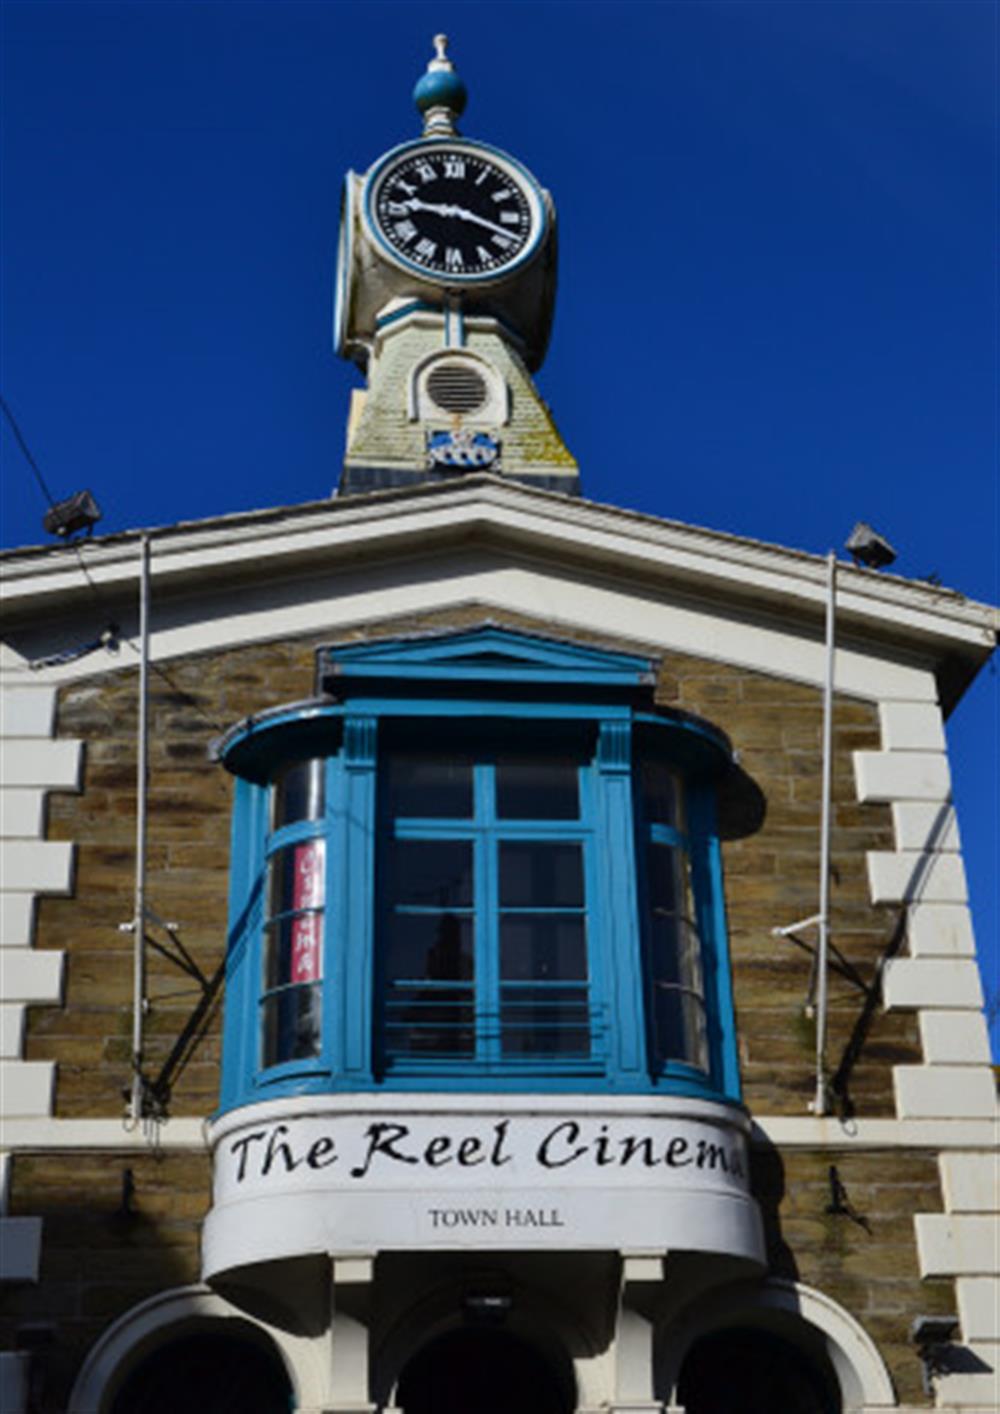 The Kingsbridge cinema.